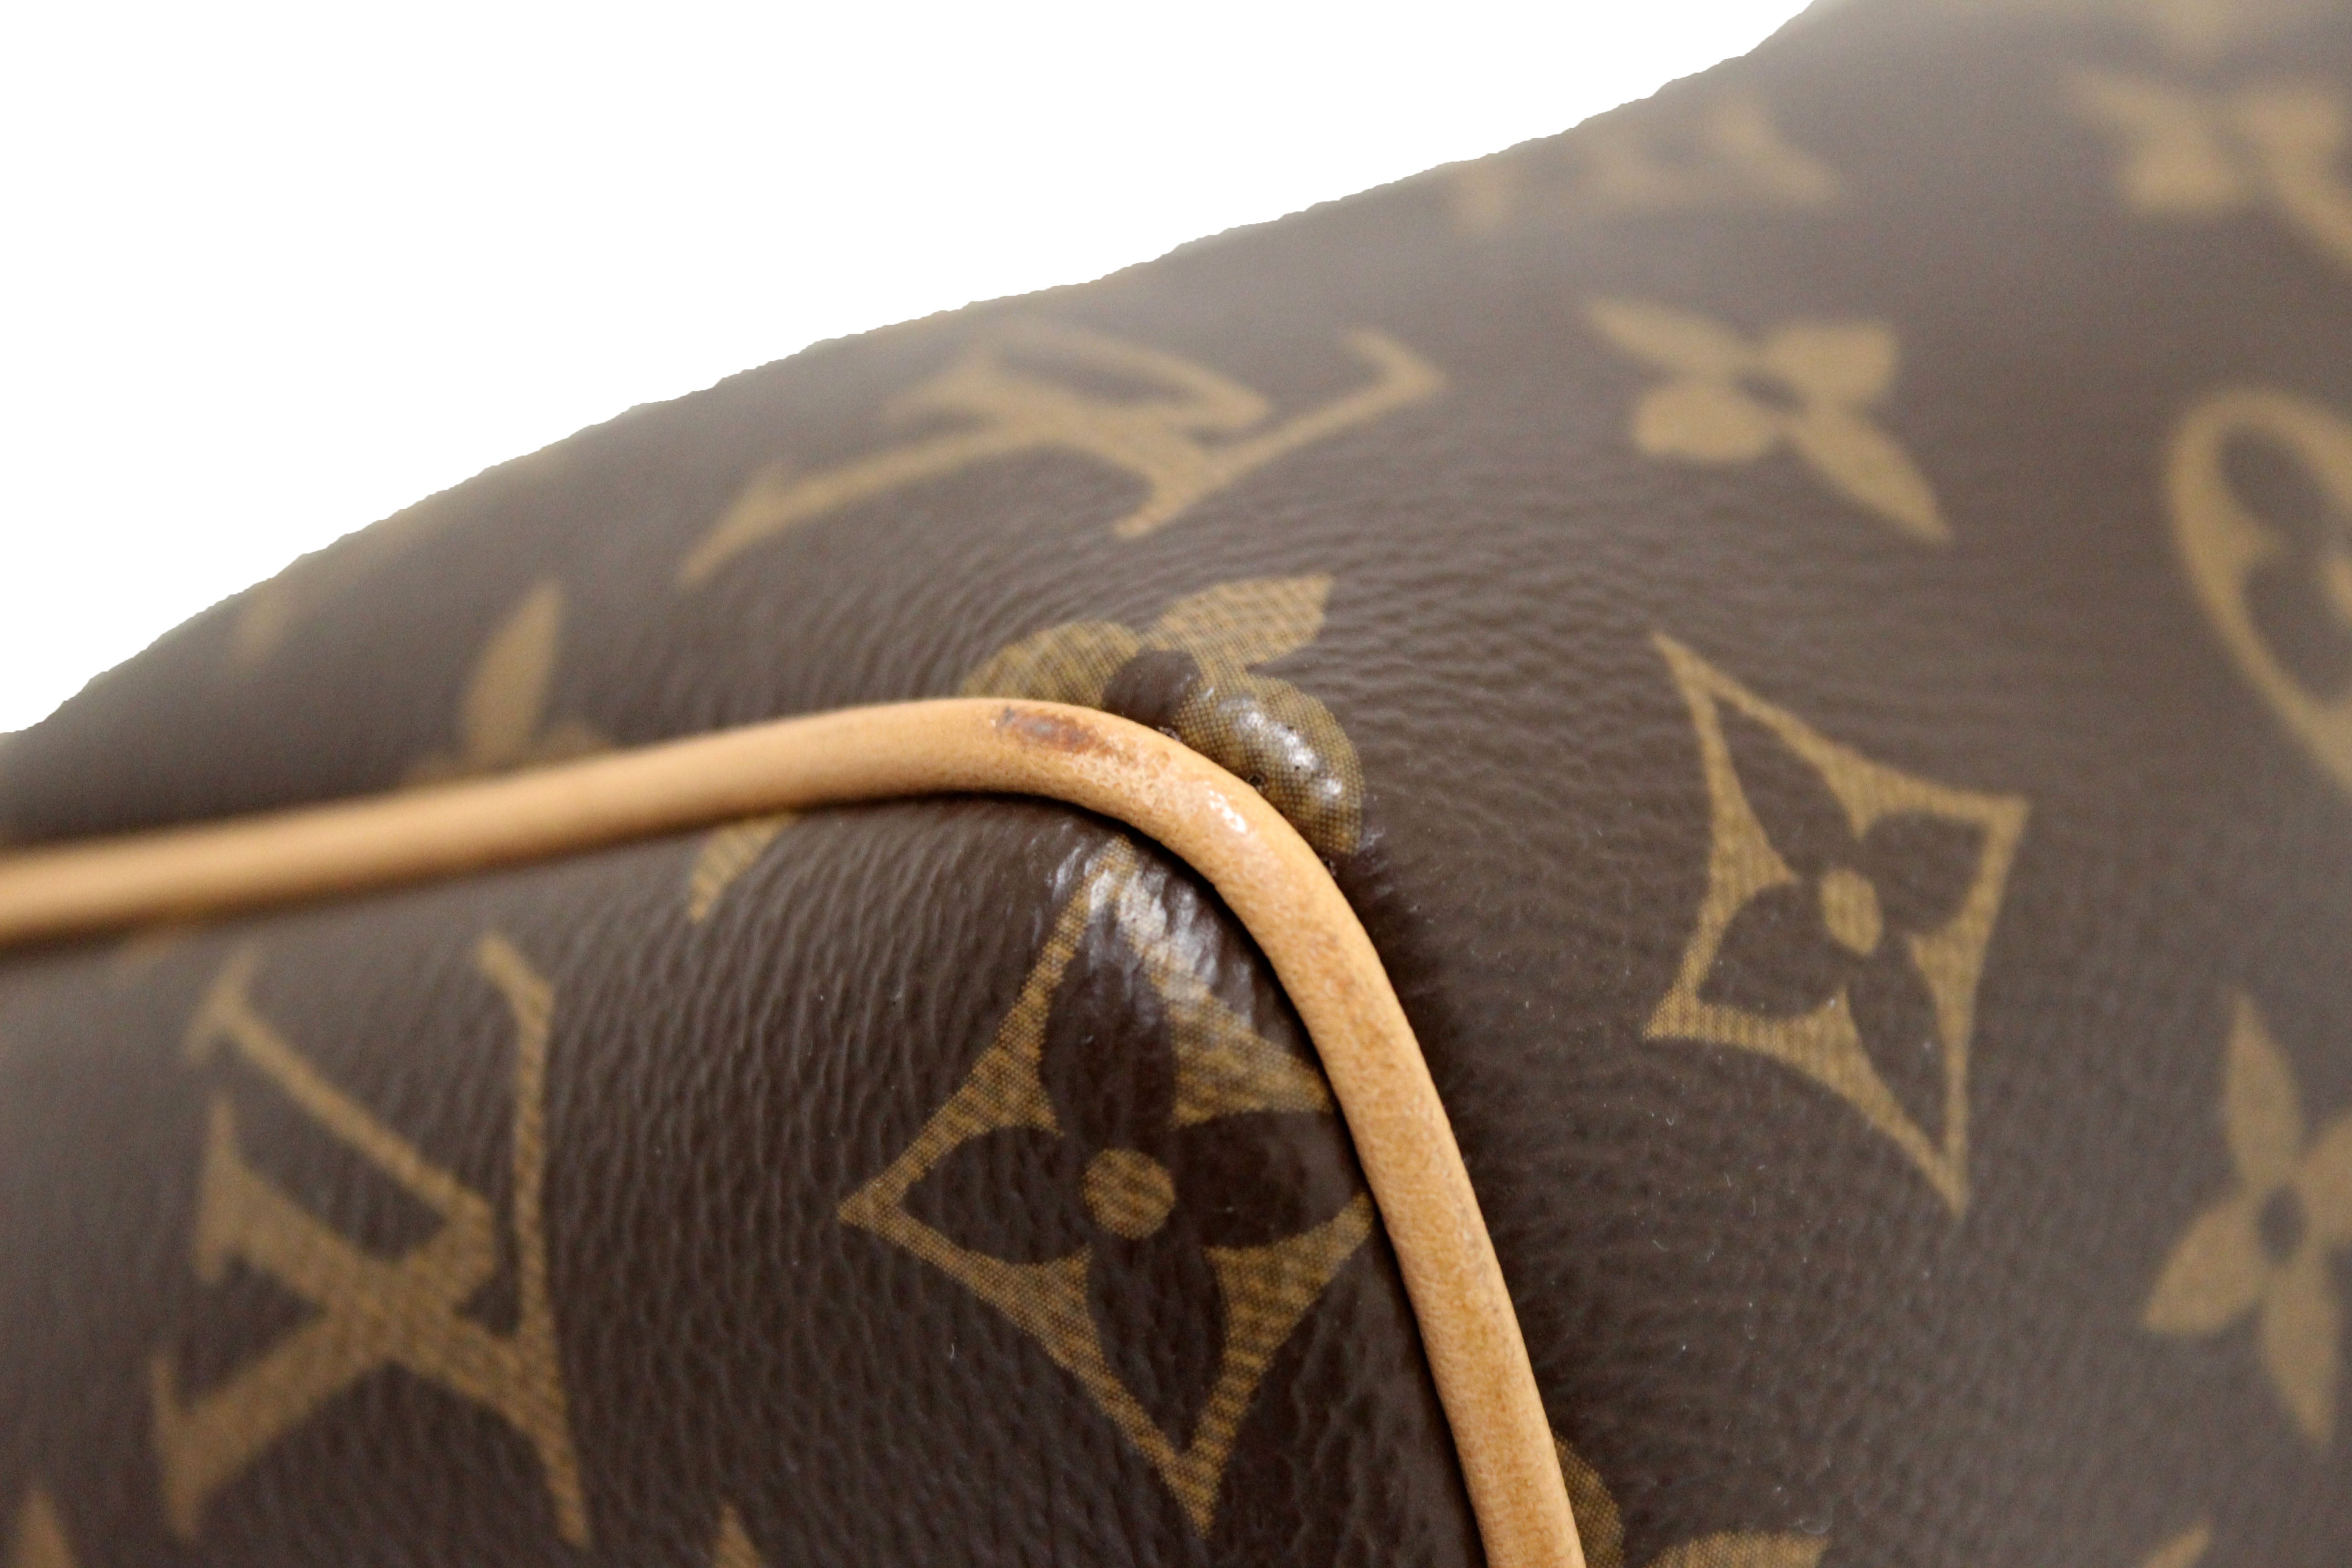 LV speed20 classic bag $185 #lv #lvbag #louisvuitton